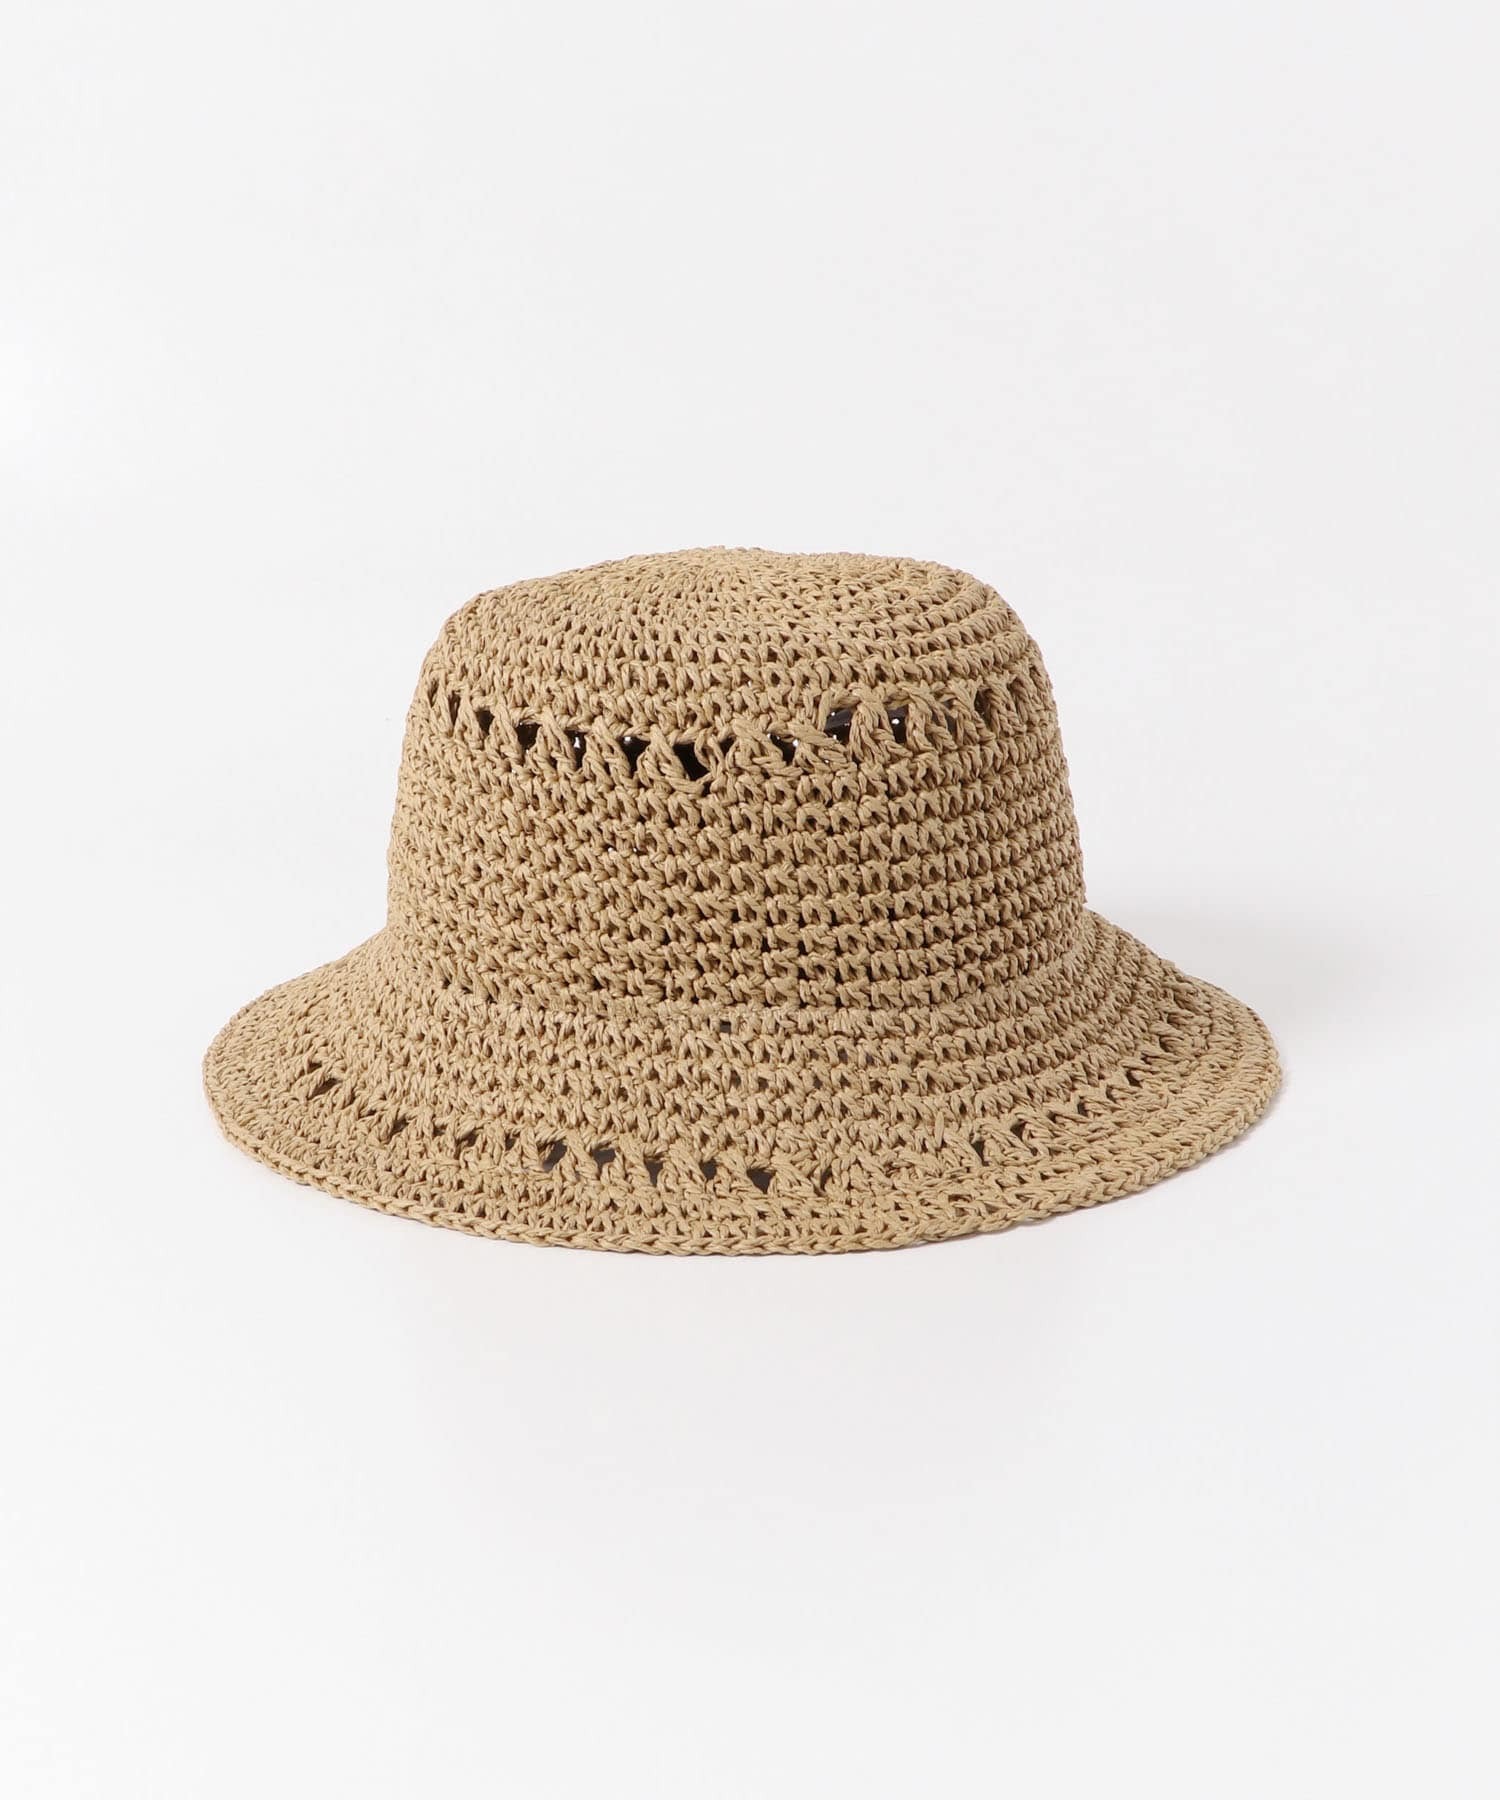 紙織漁夫帽